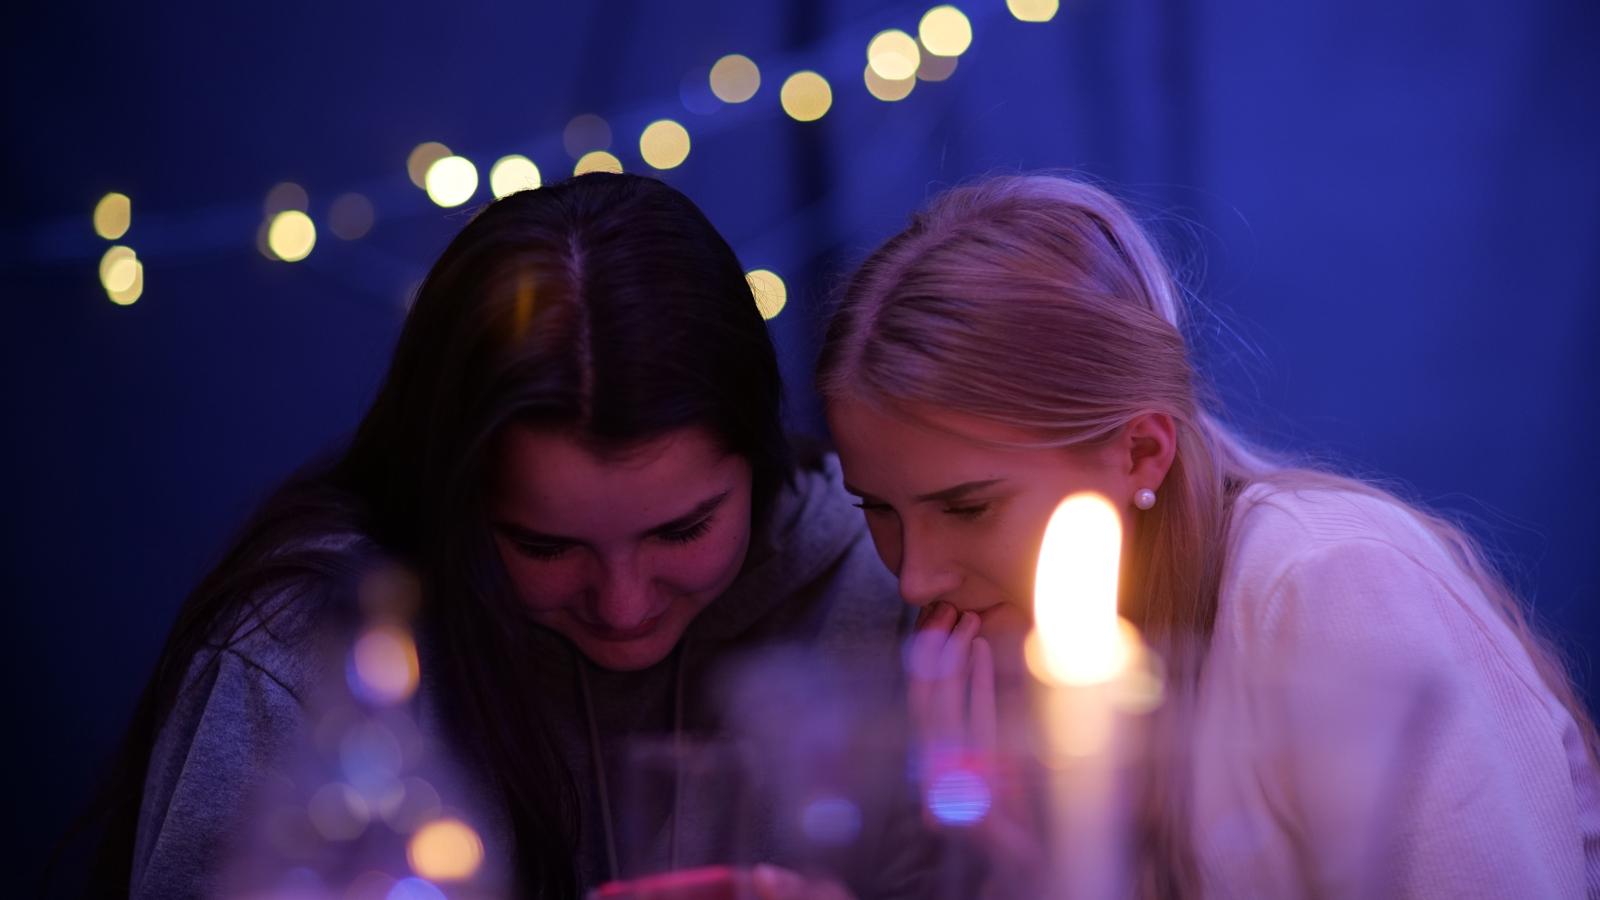 Två unga kvinnor som sitter och kollar på en mobiltelefon. På bordet framför dem står det ett tänt ljus.